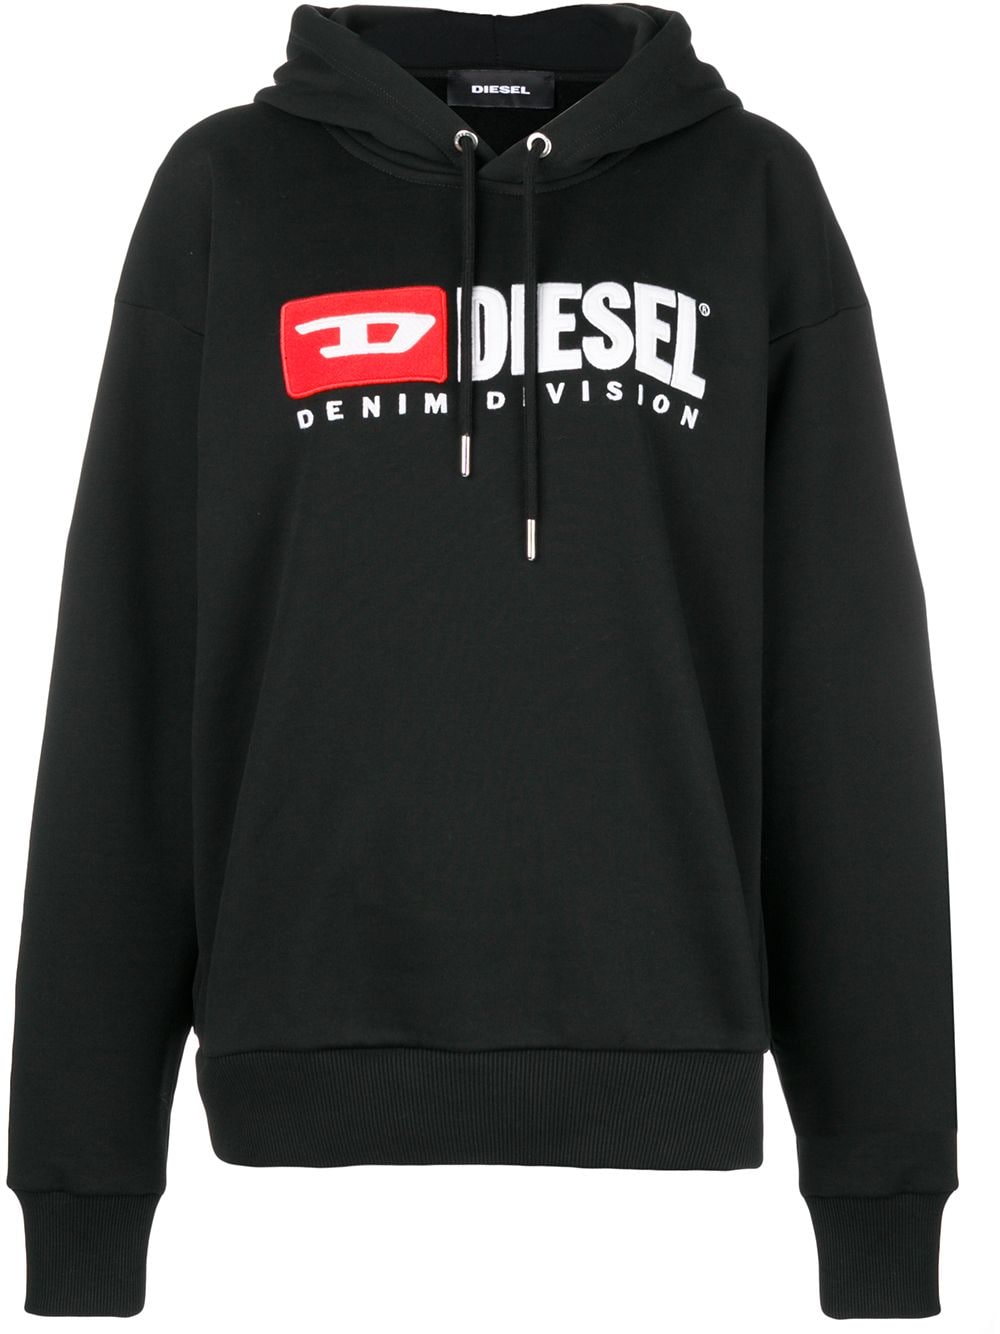 фото Diesel denim vision logo hoodie